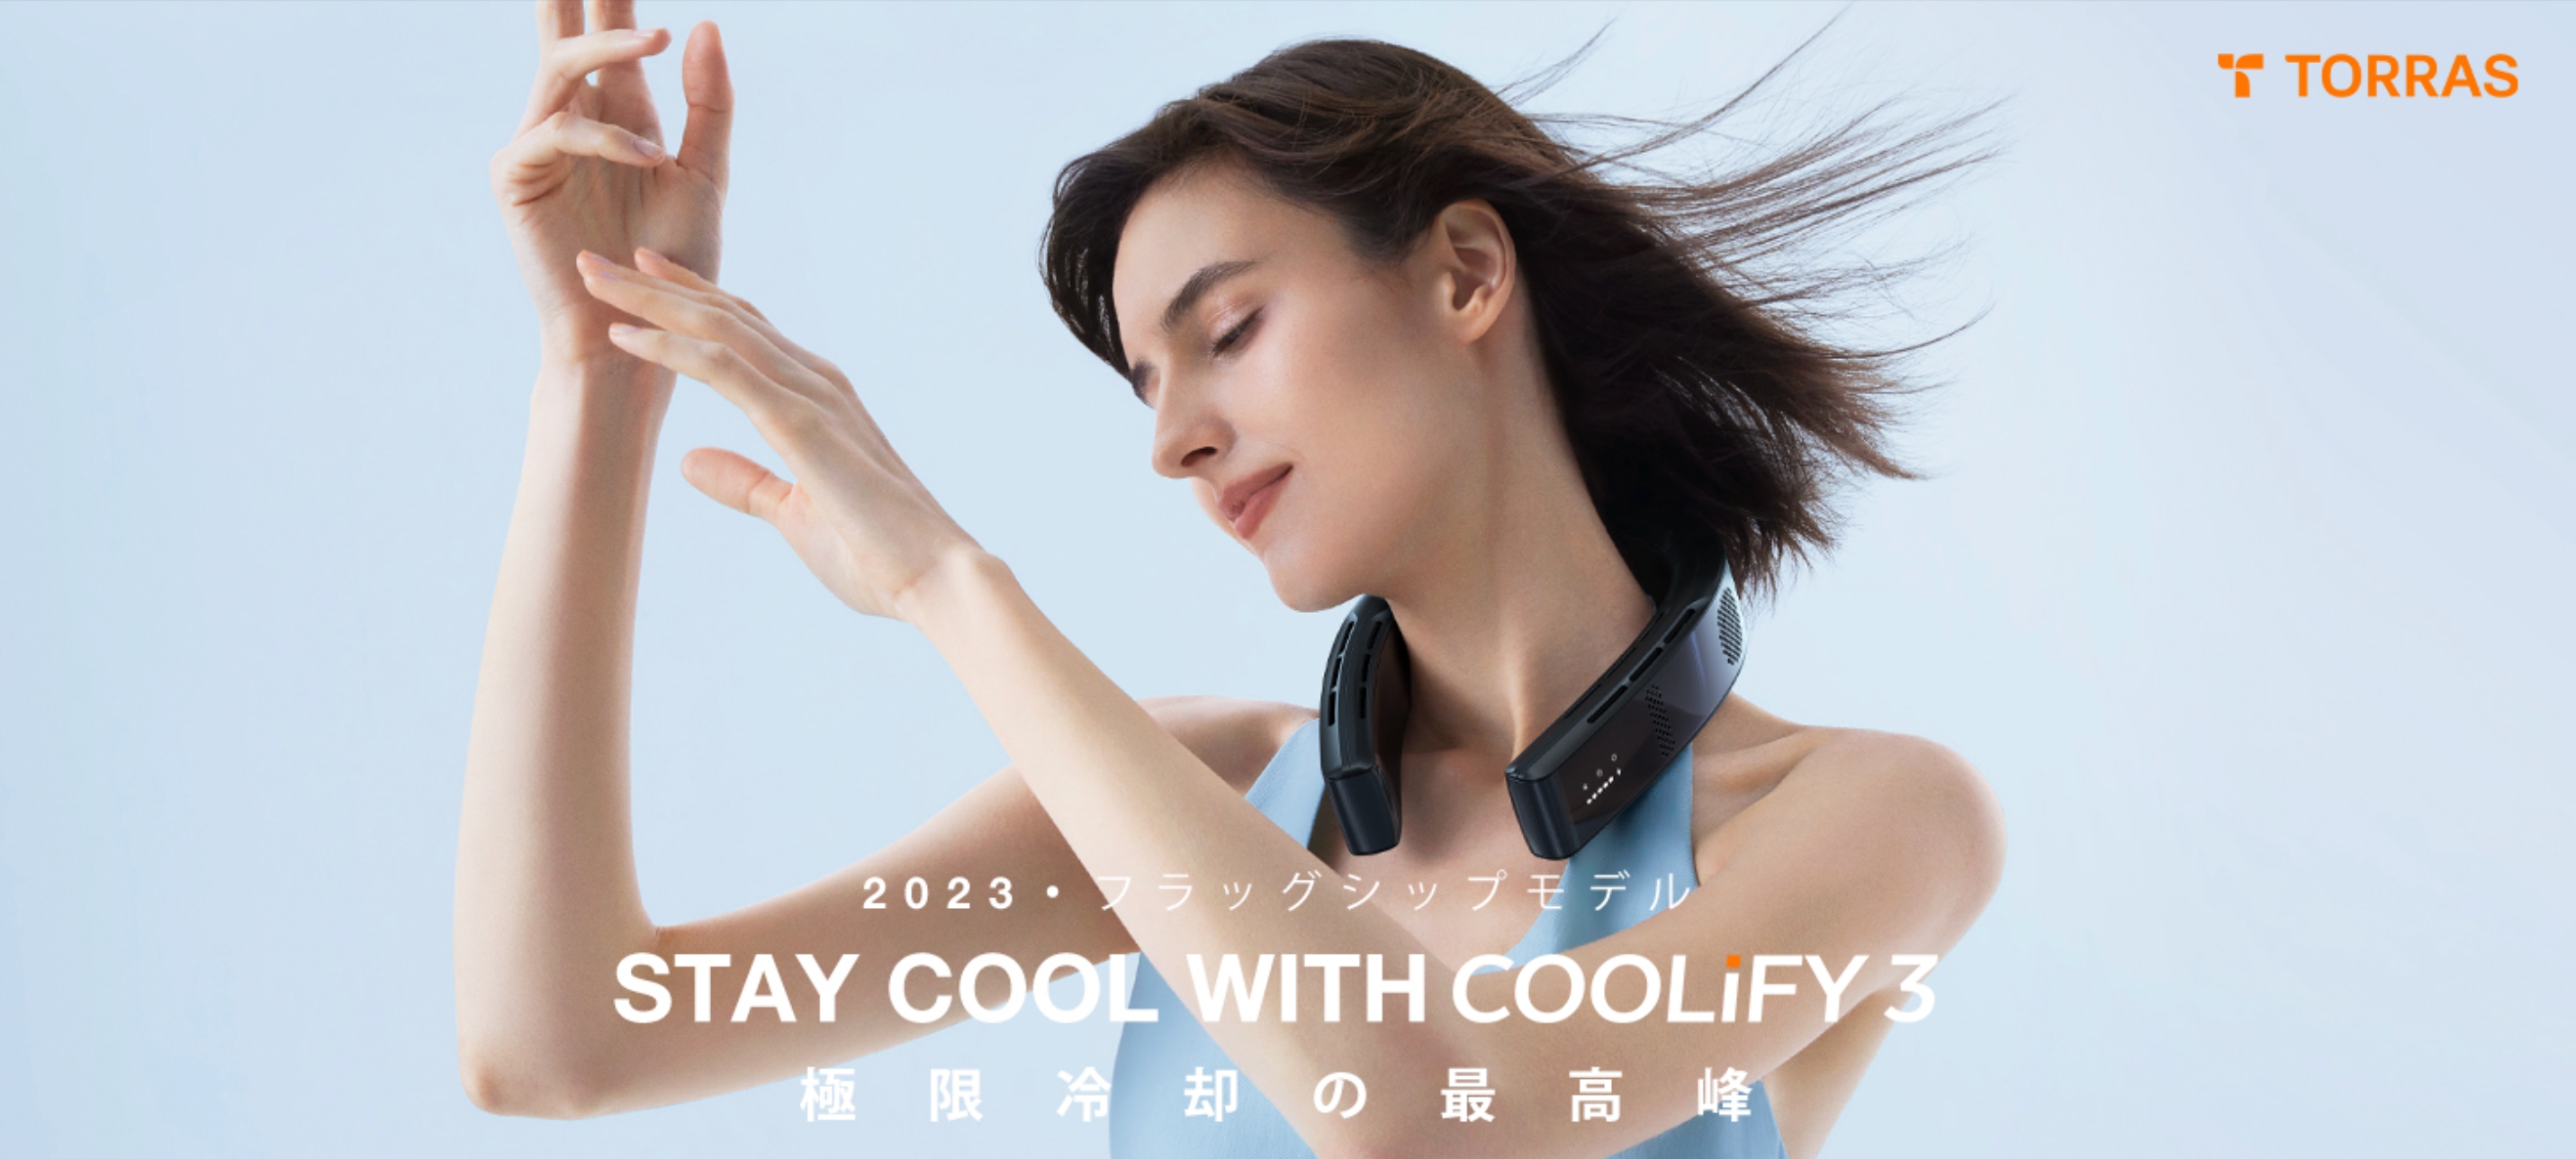 Coolify 3 Coolify 最新モデル